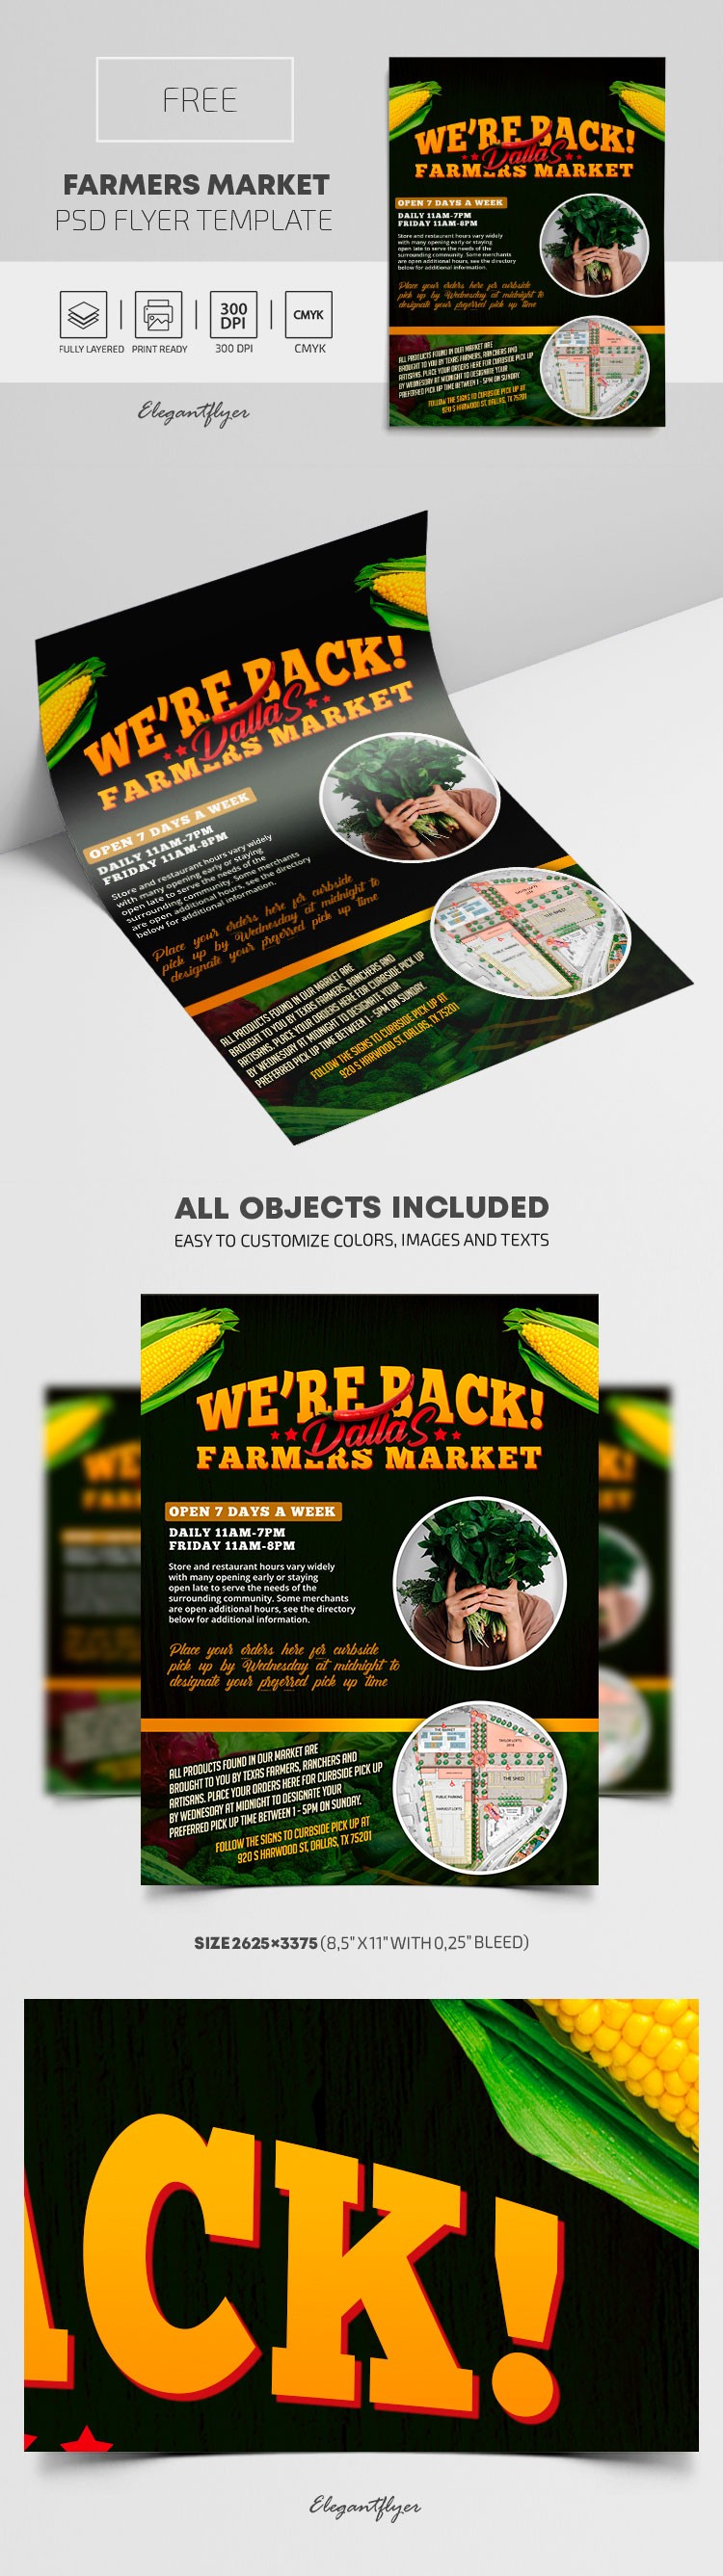 Farmers Market Flyer by ElegantFlyer